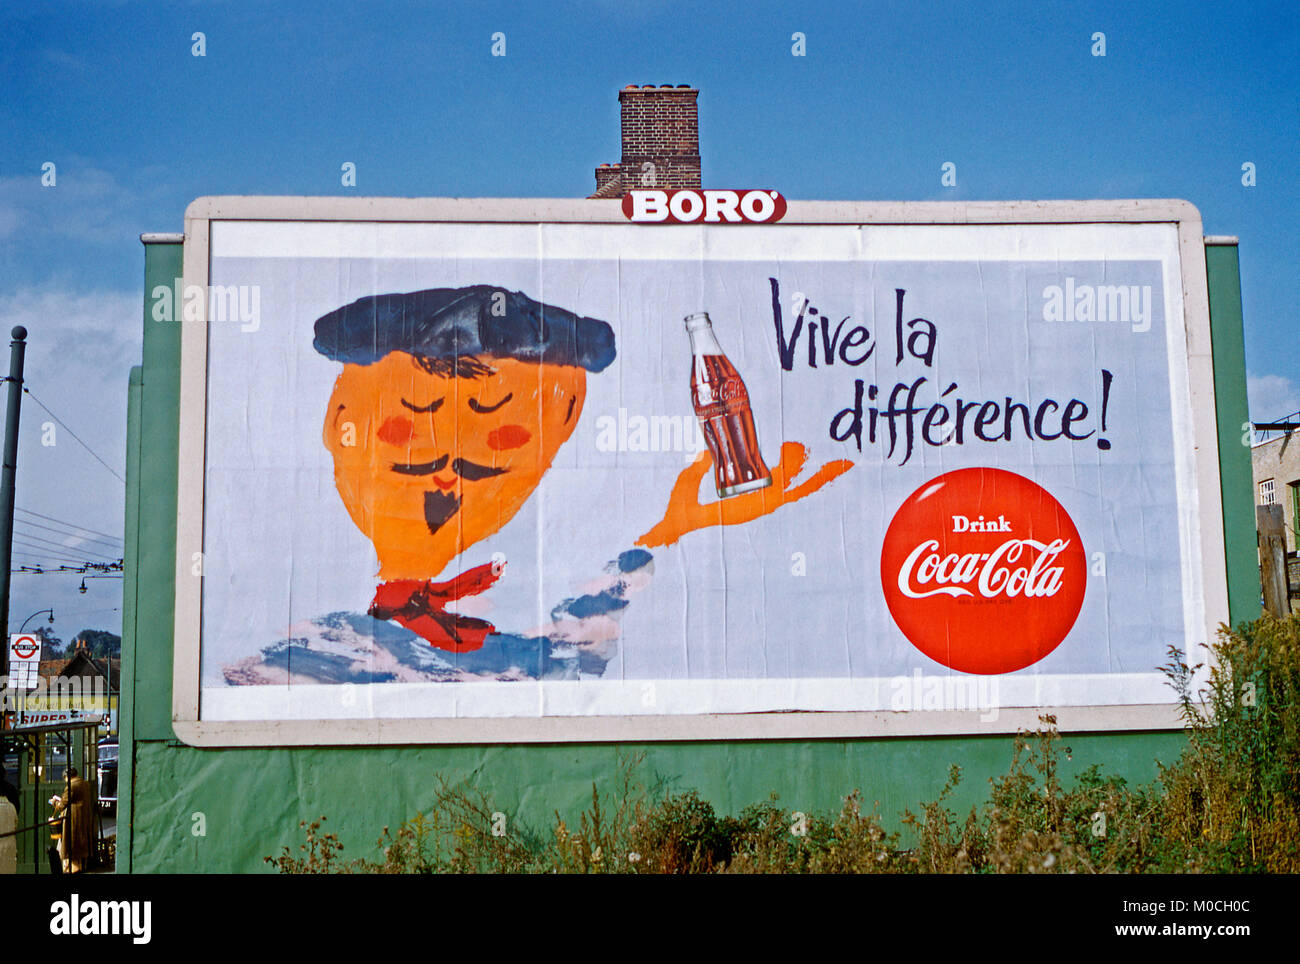 1959 affiche sur un panneau publicitaire ou de panneau publicitaire dans la rue Edgware, au nord de Londres avec les Français dire "Vive la différence" (Vive la différence) la publicité Coca Cola. Le thème français continue avec une illustration d'un français tenant une bouteille de Coca Banque D'Images